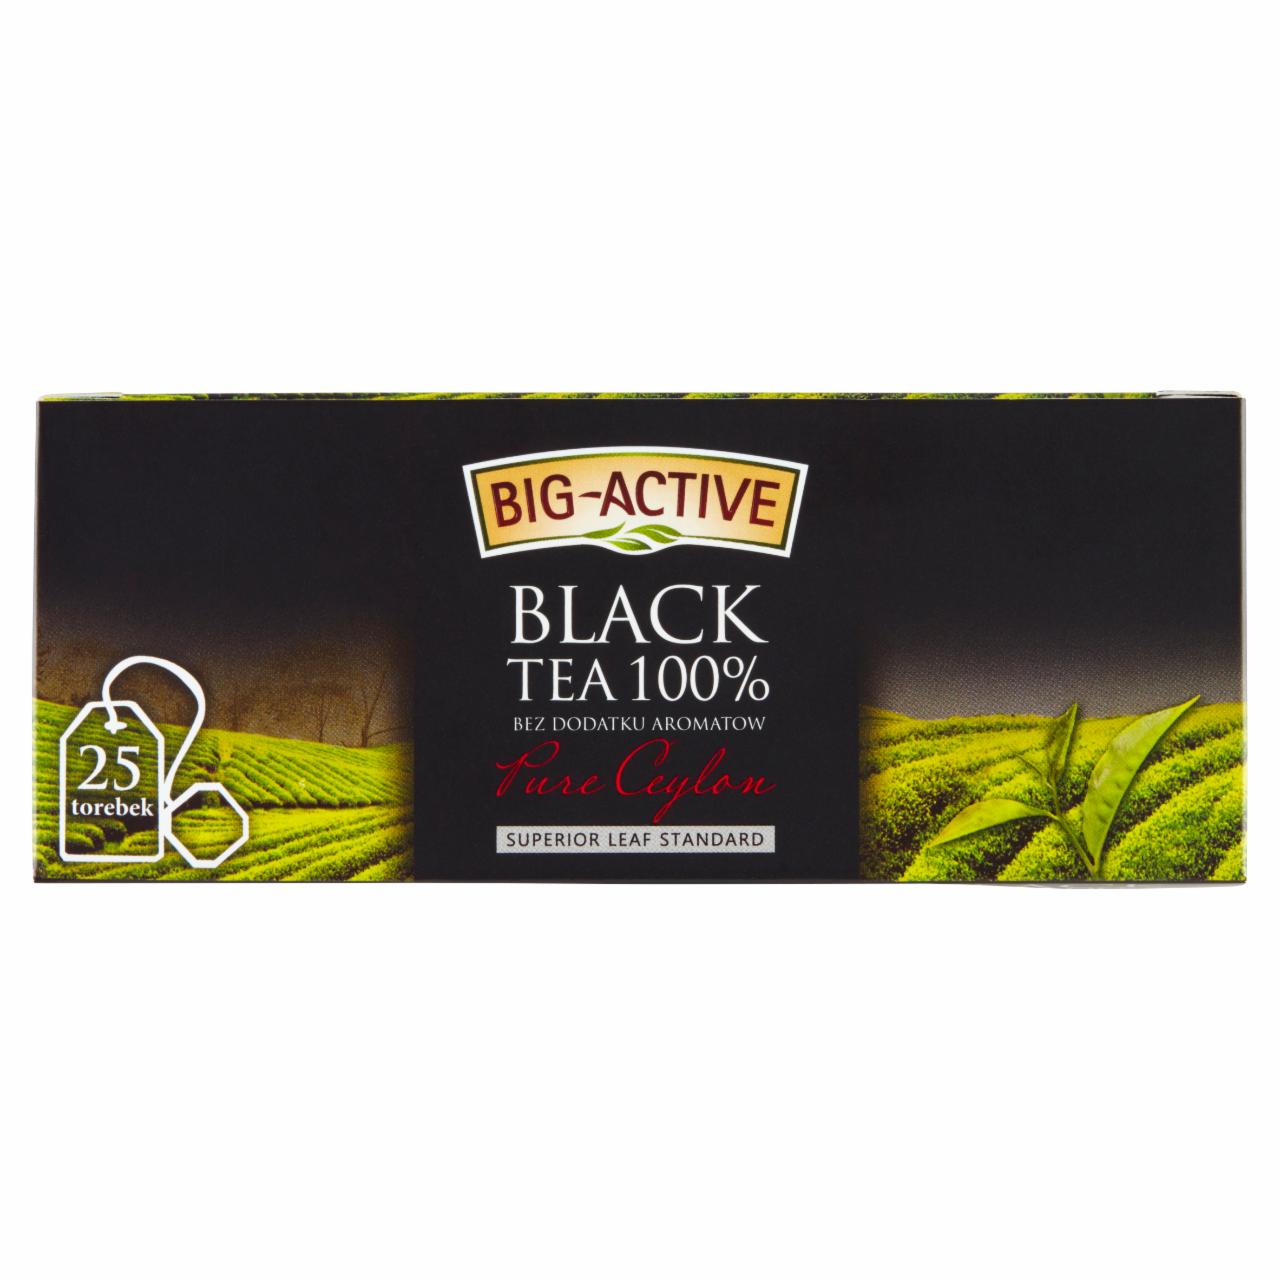 Zdjęcia - Big-Active Pure Ceylon Herbata czarna 100% 37,5 g (25 torebek)